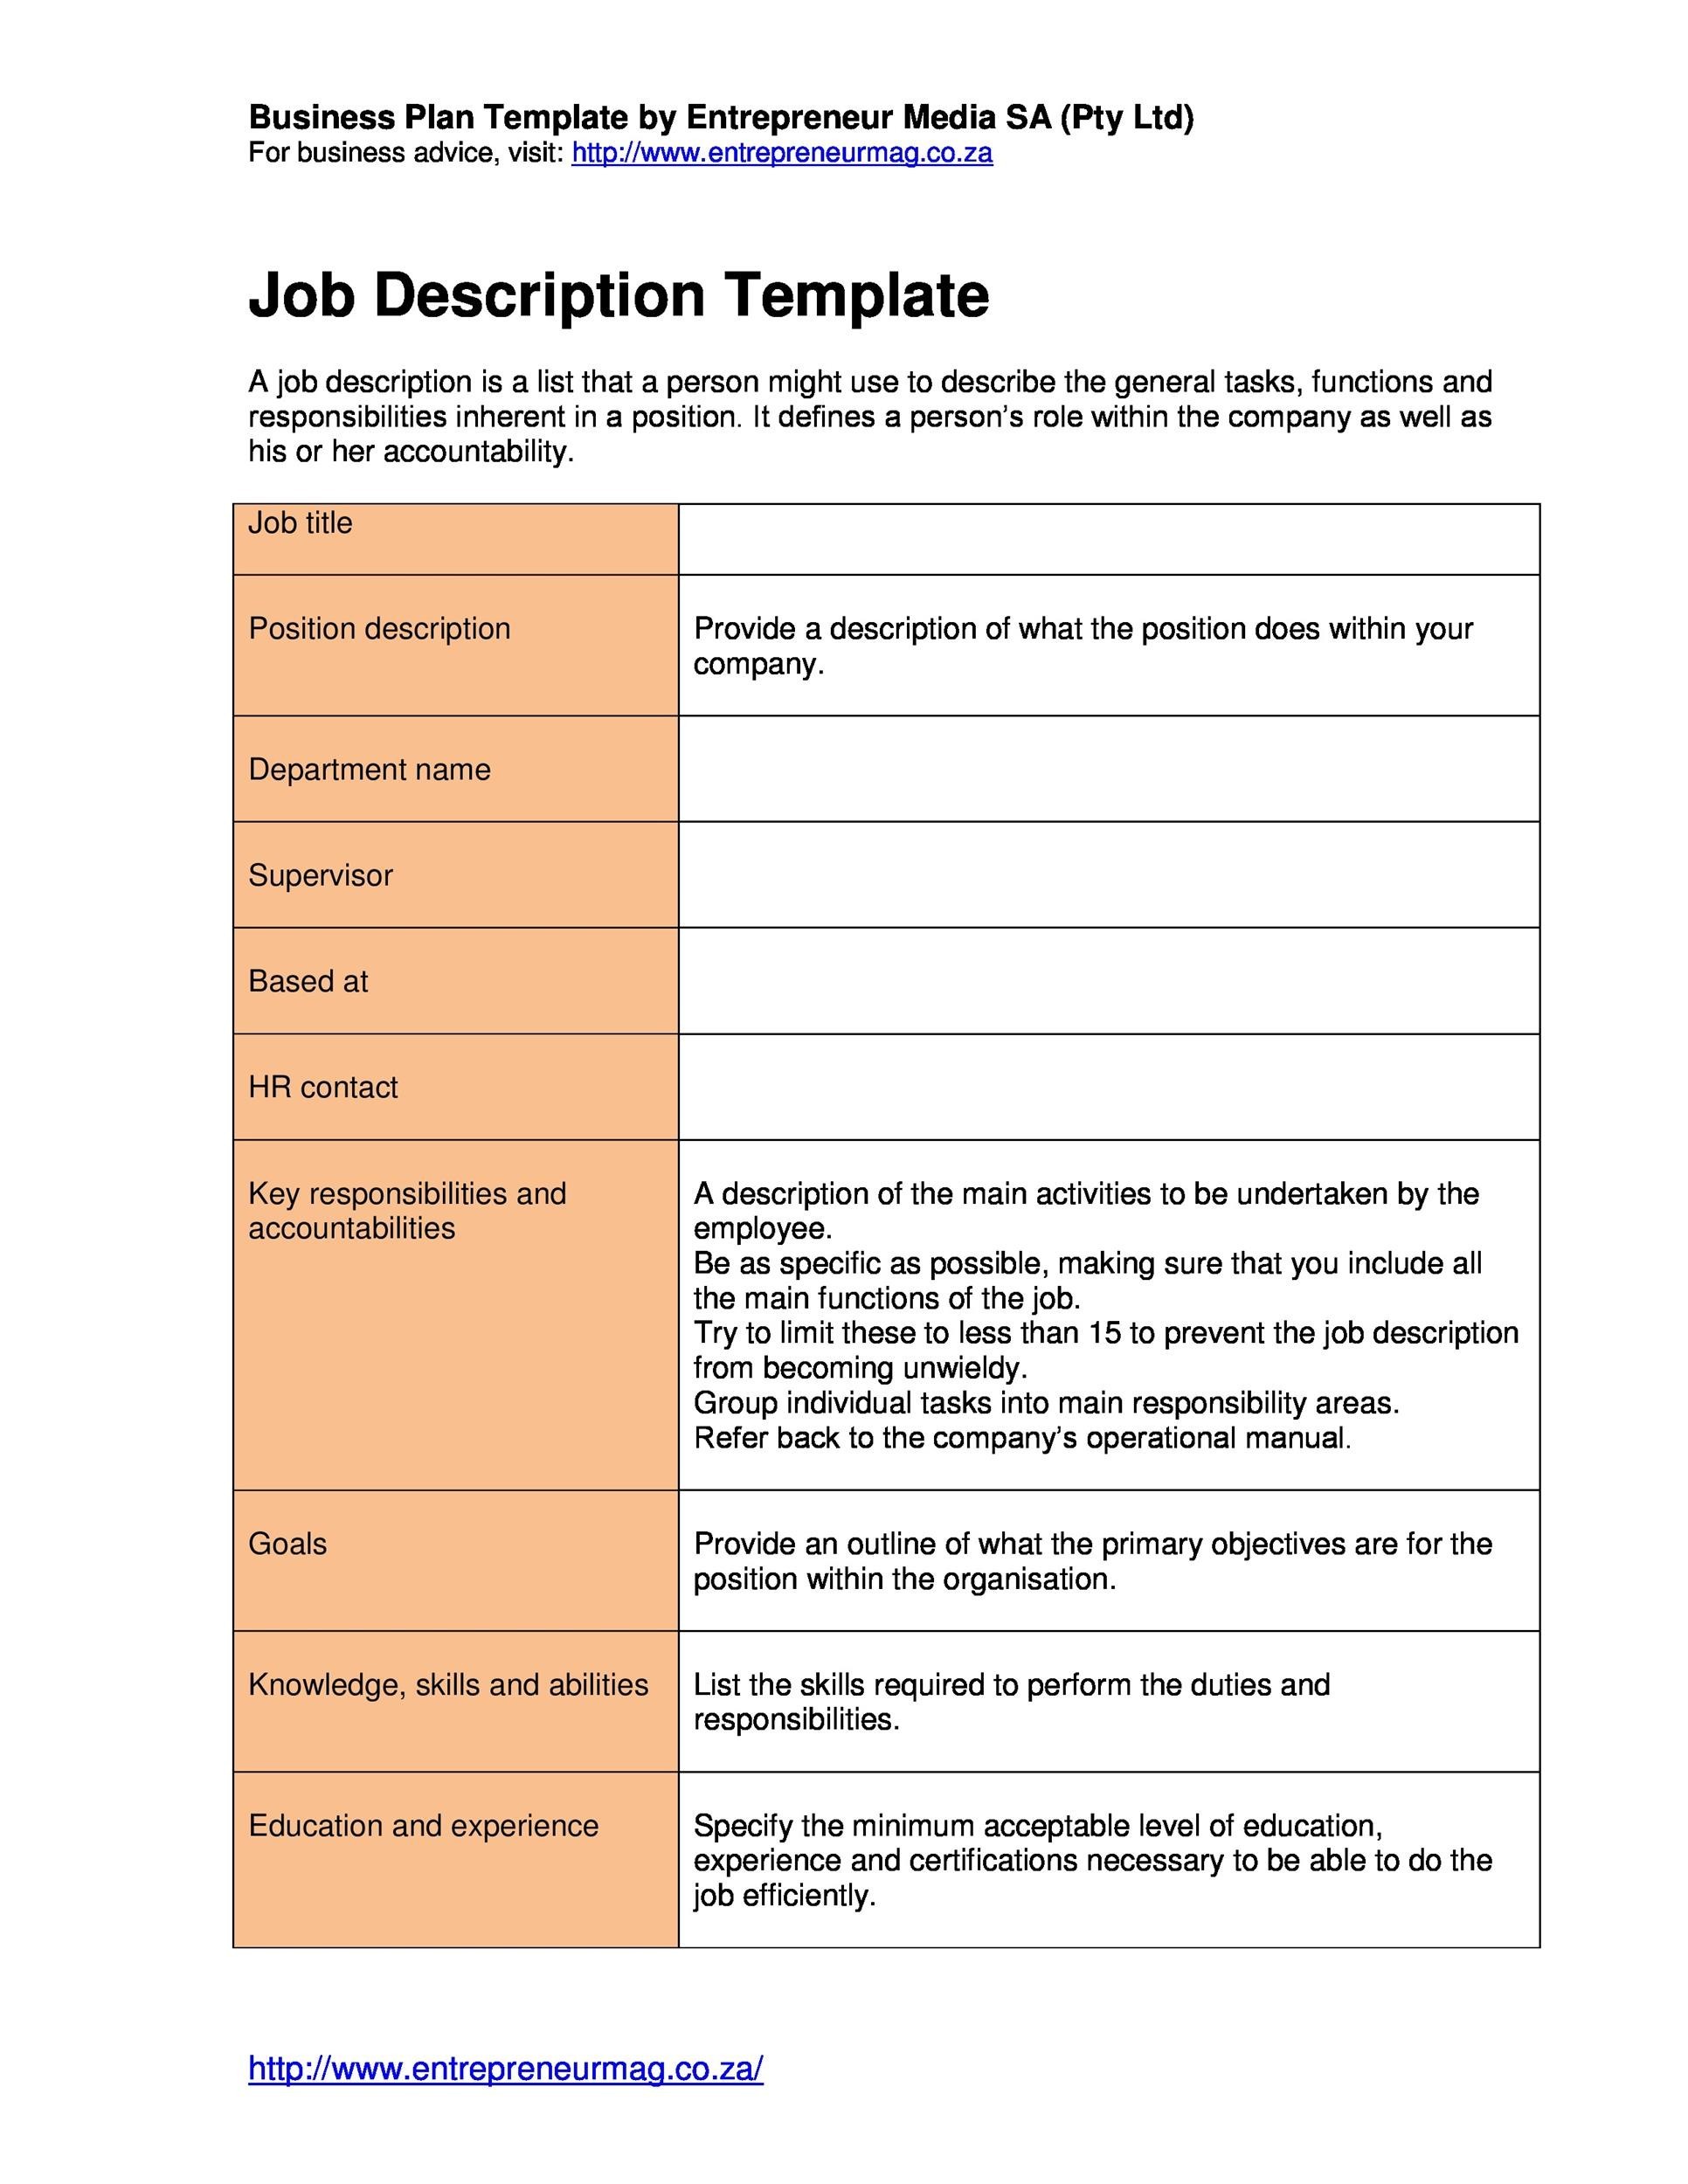 47 Job Description Templates & Examples ᐅ TemplateLab